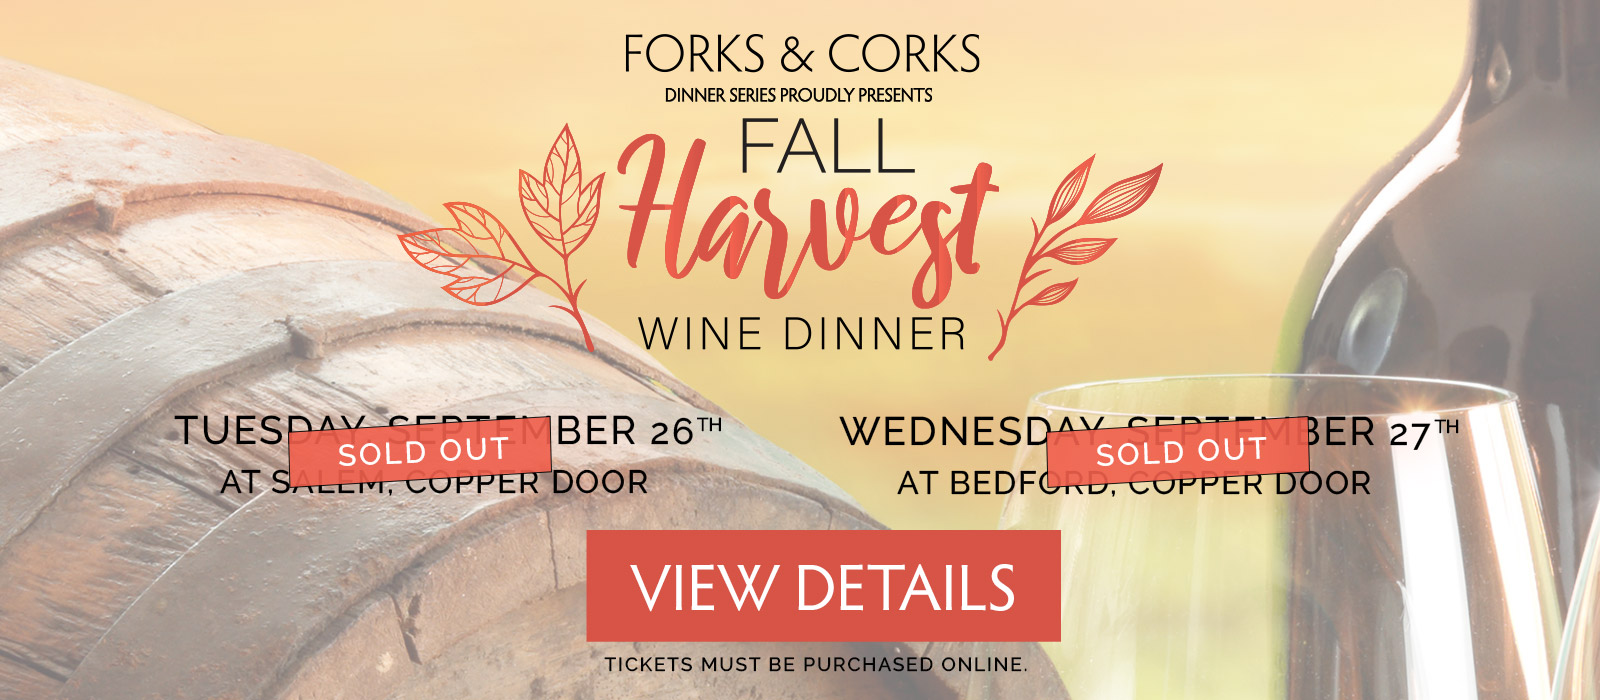 Forks & Corks Dinner